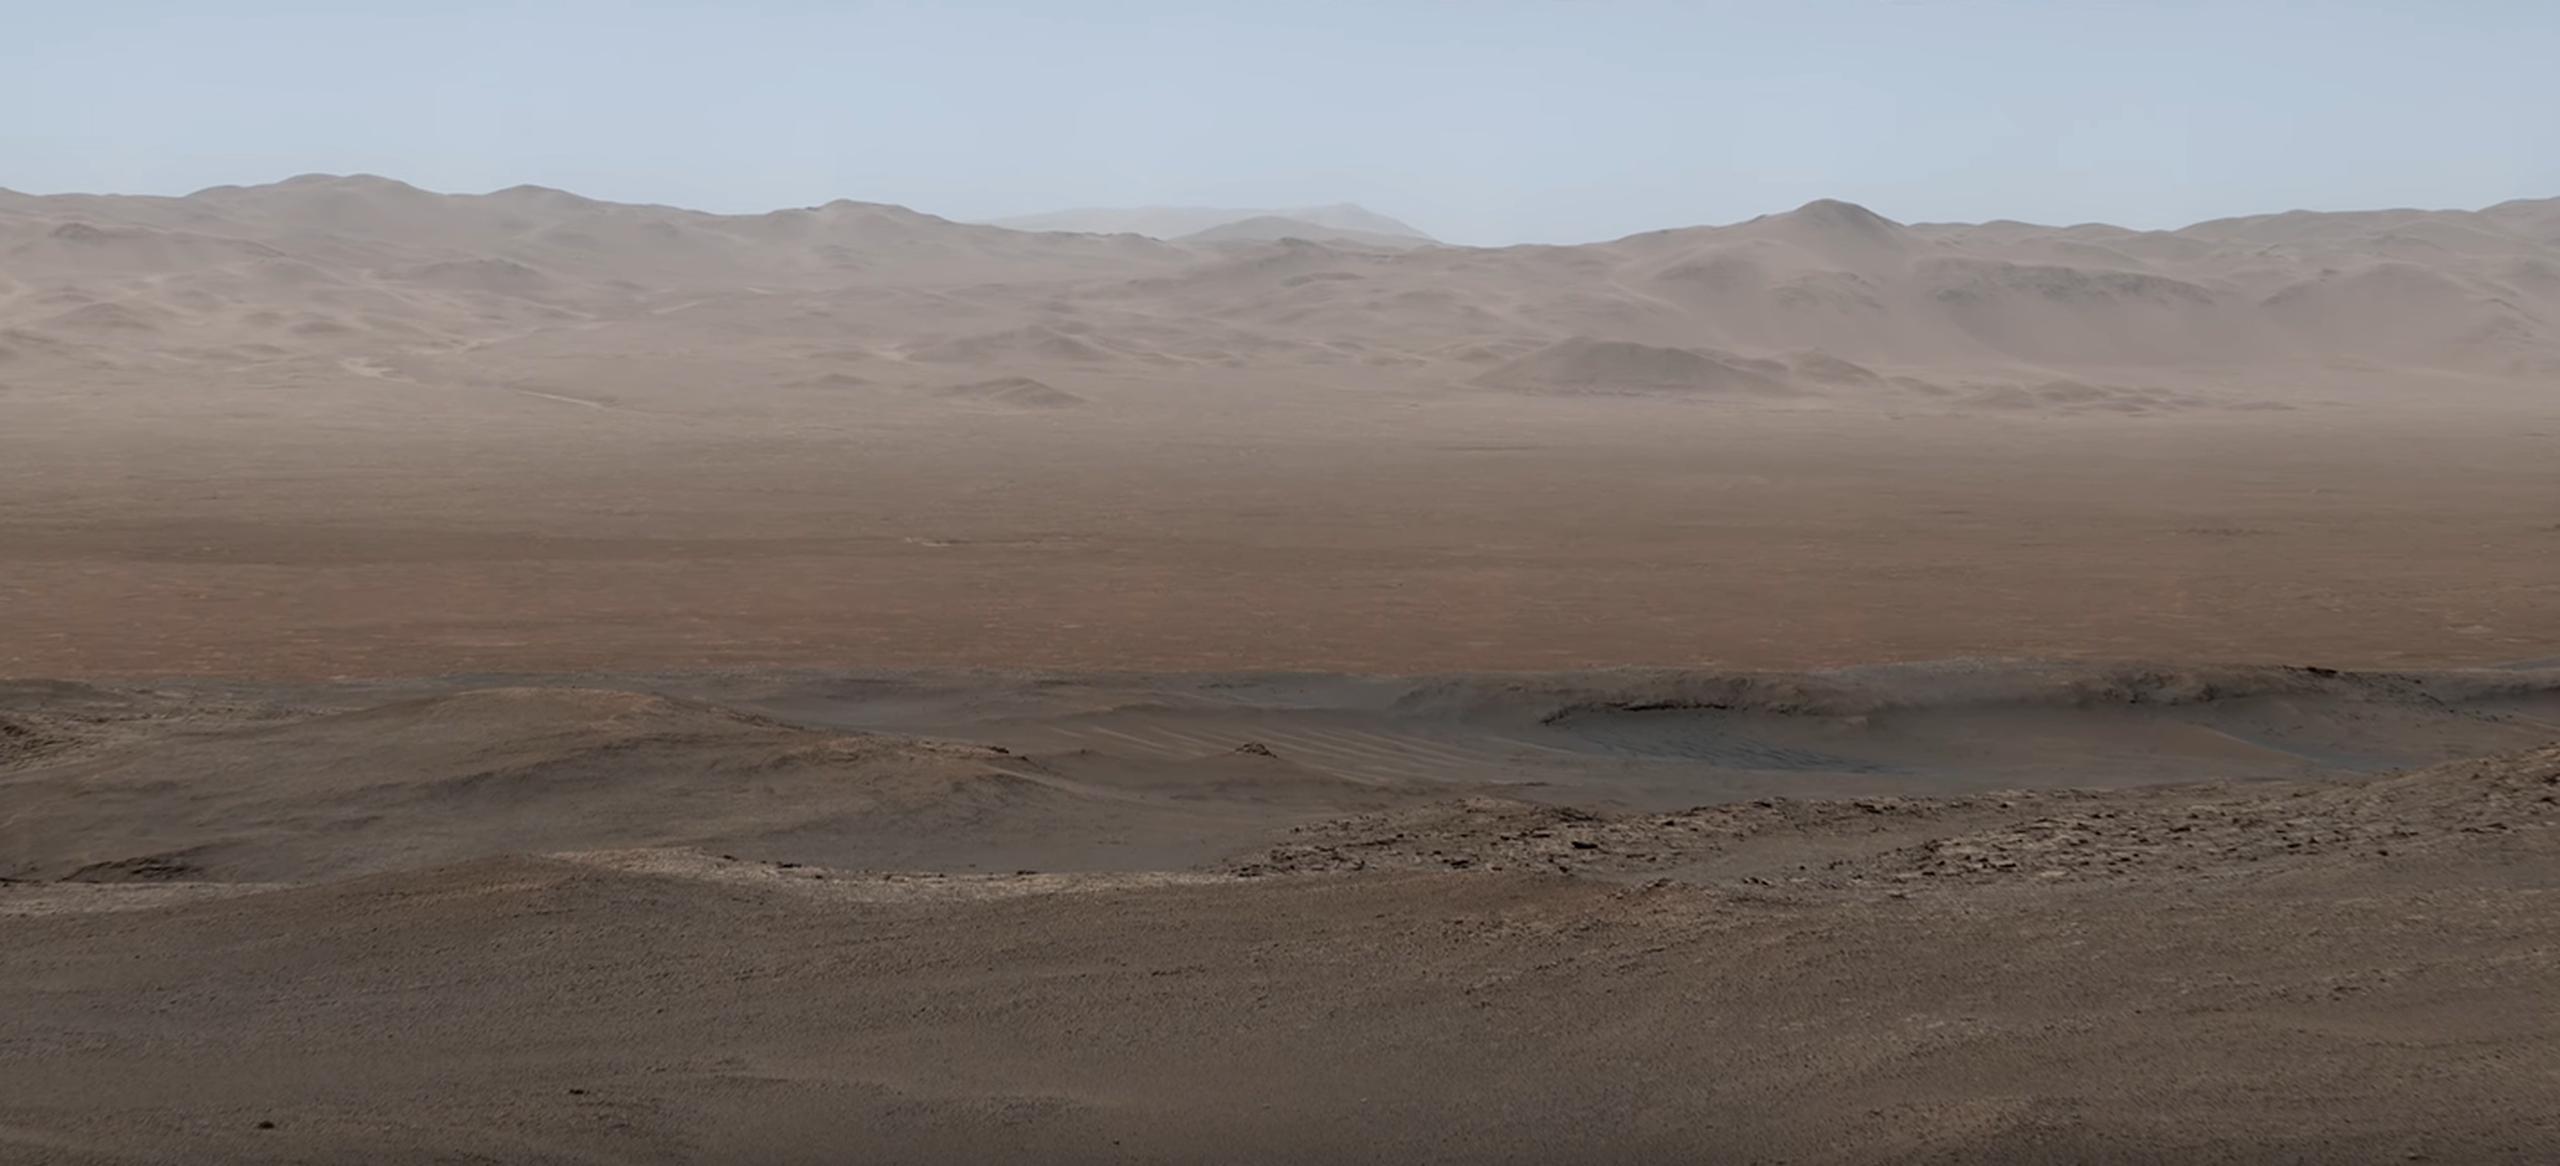 Imagen de Marte captada por el rover Curiosity